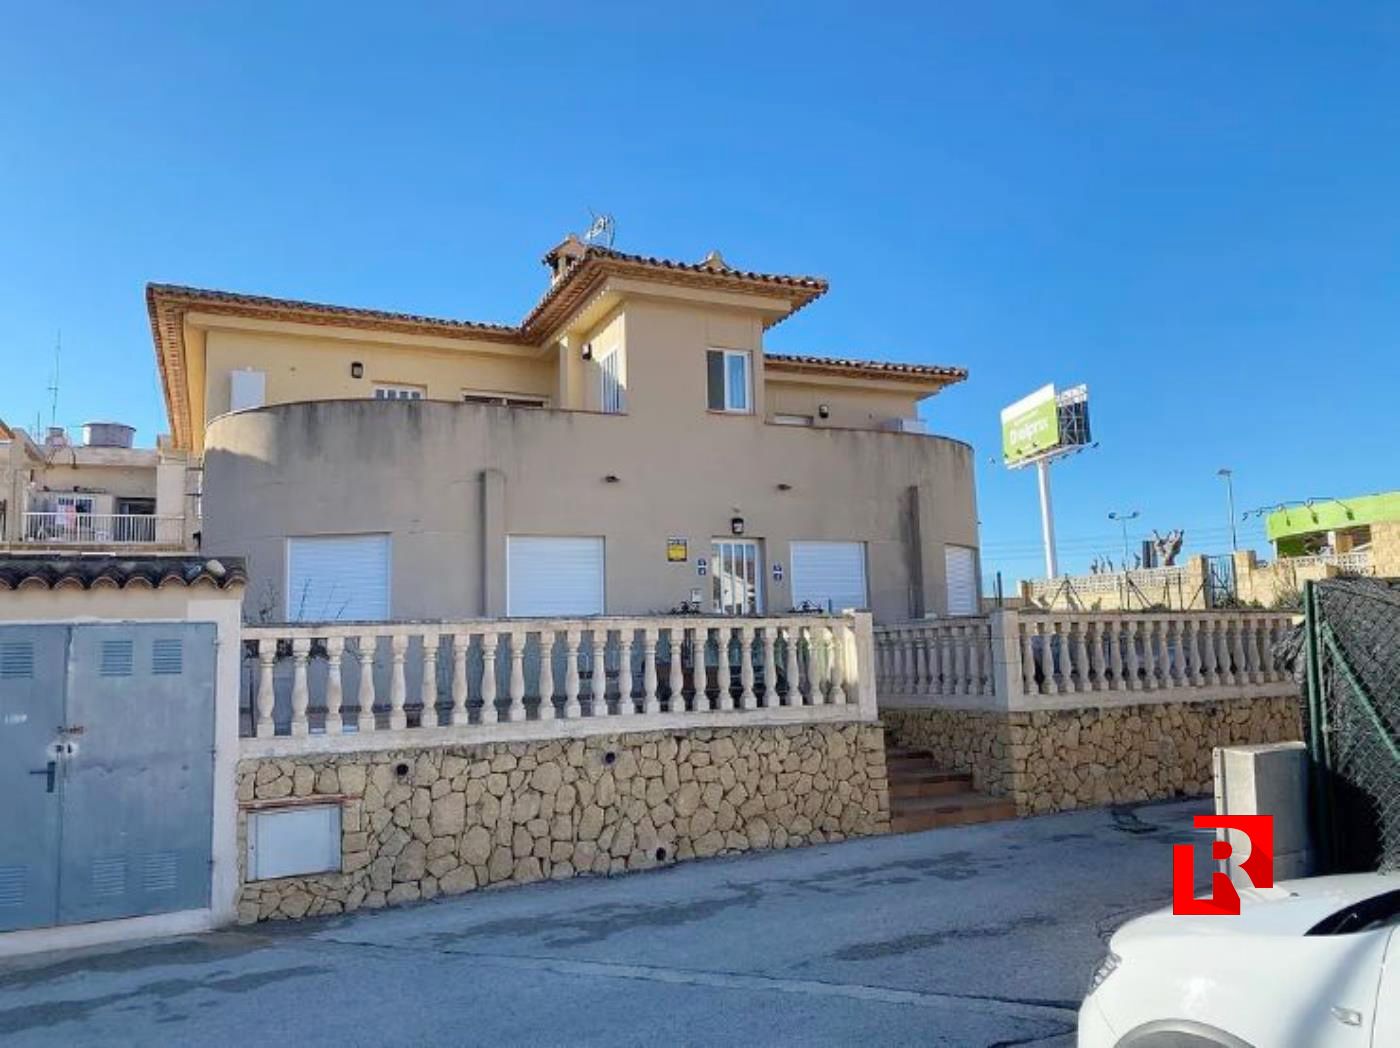 Villa zum Verkauf in Wohngegend - La Nucia, 9 km von Benidorm entfernt